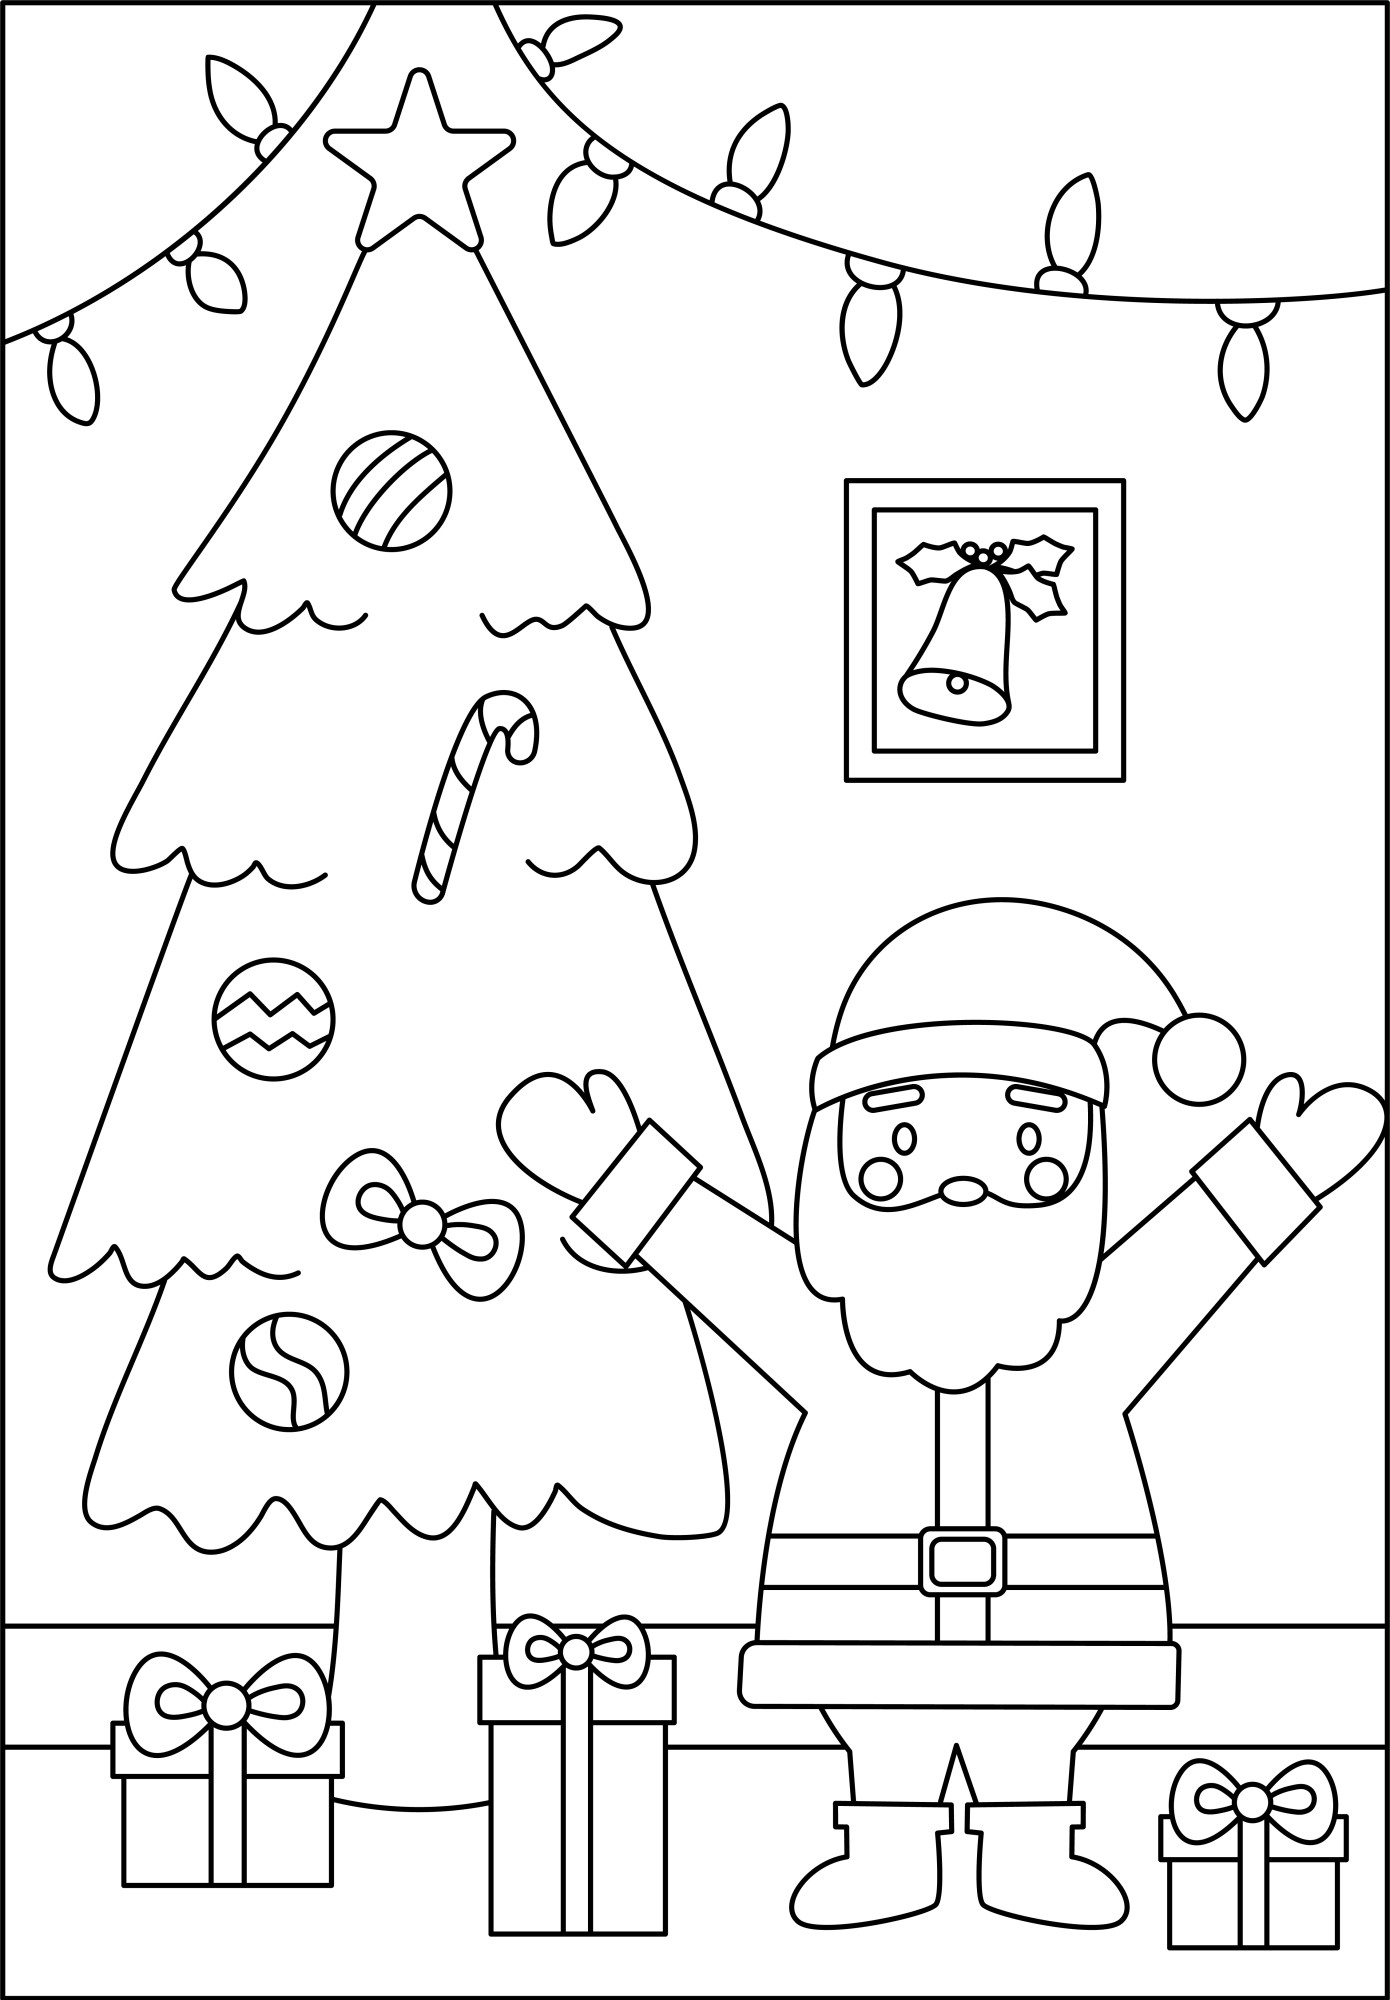 Раскраска для детей: волшебный дед мороз рядом с ёлкой и подарками